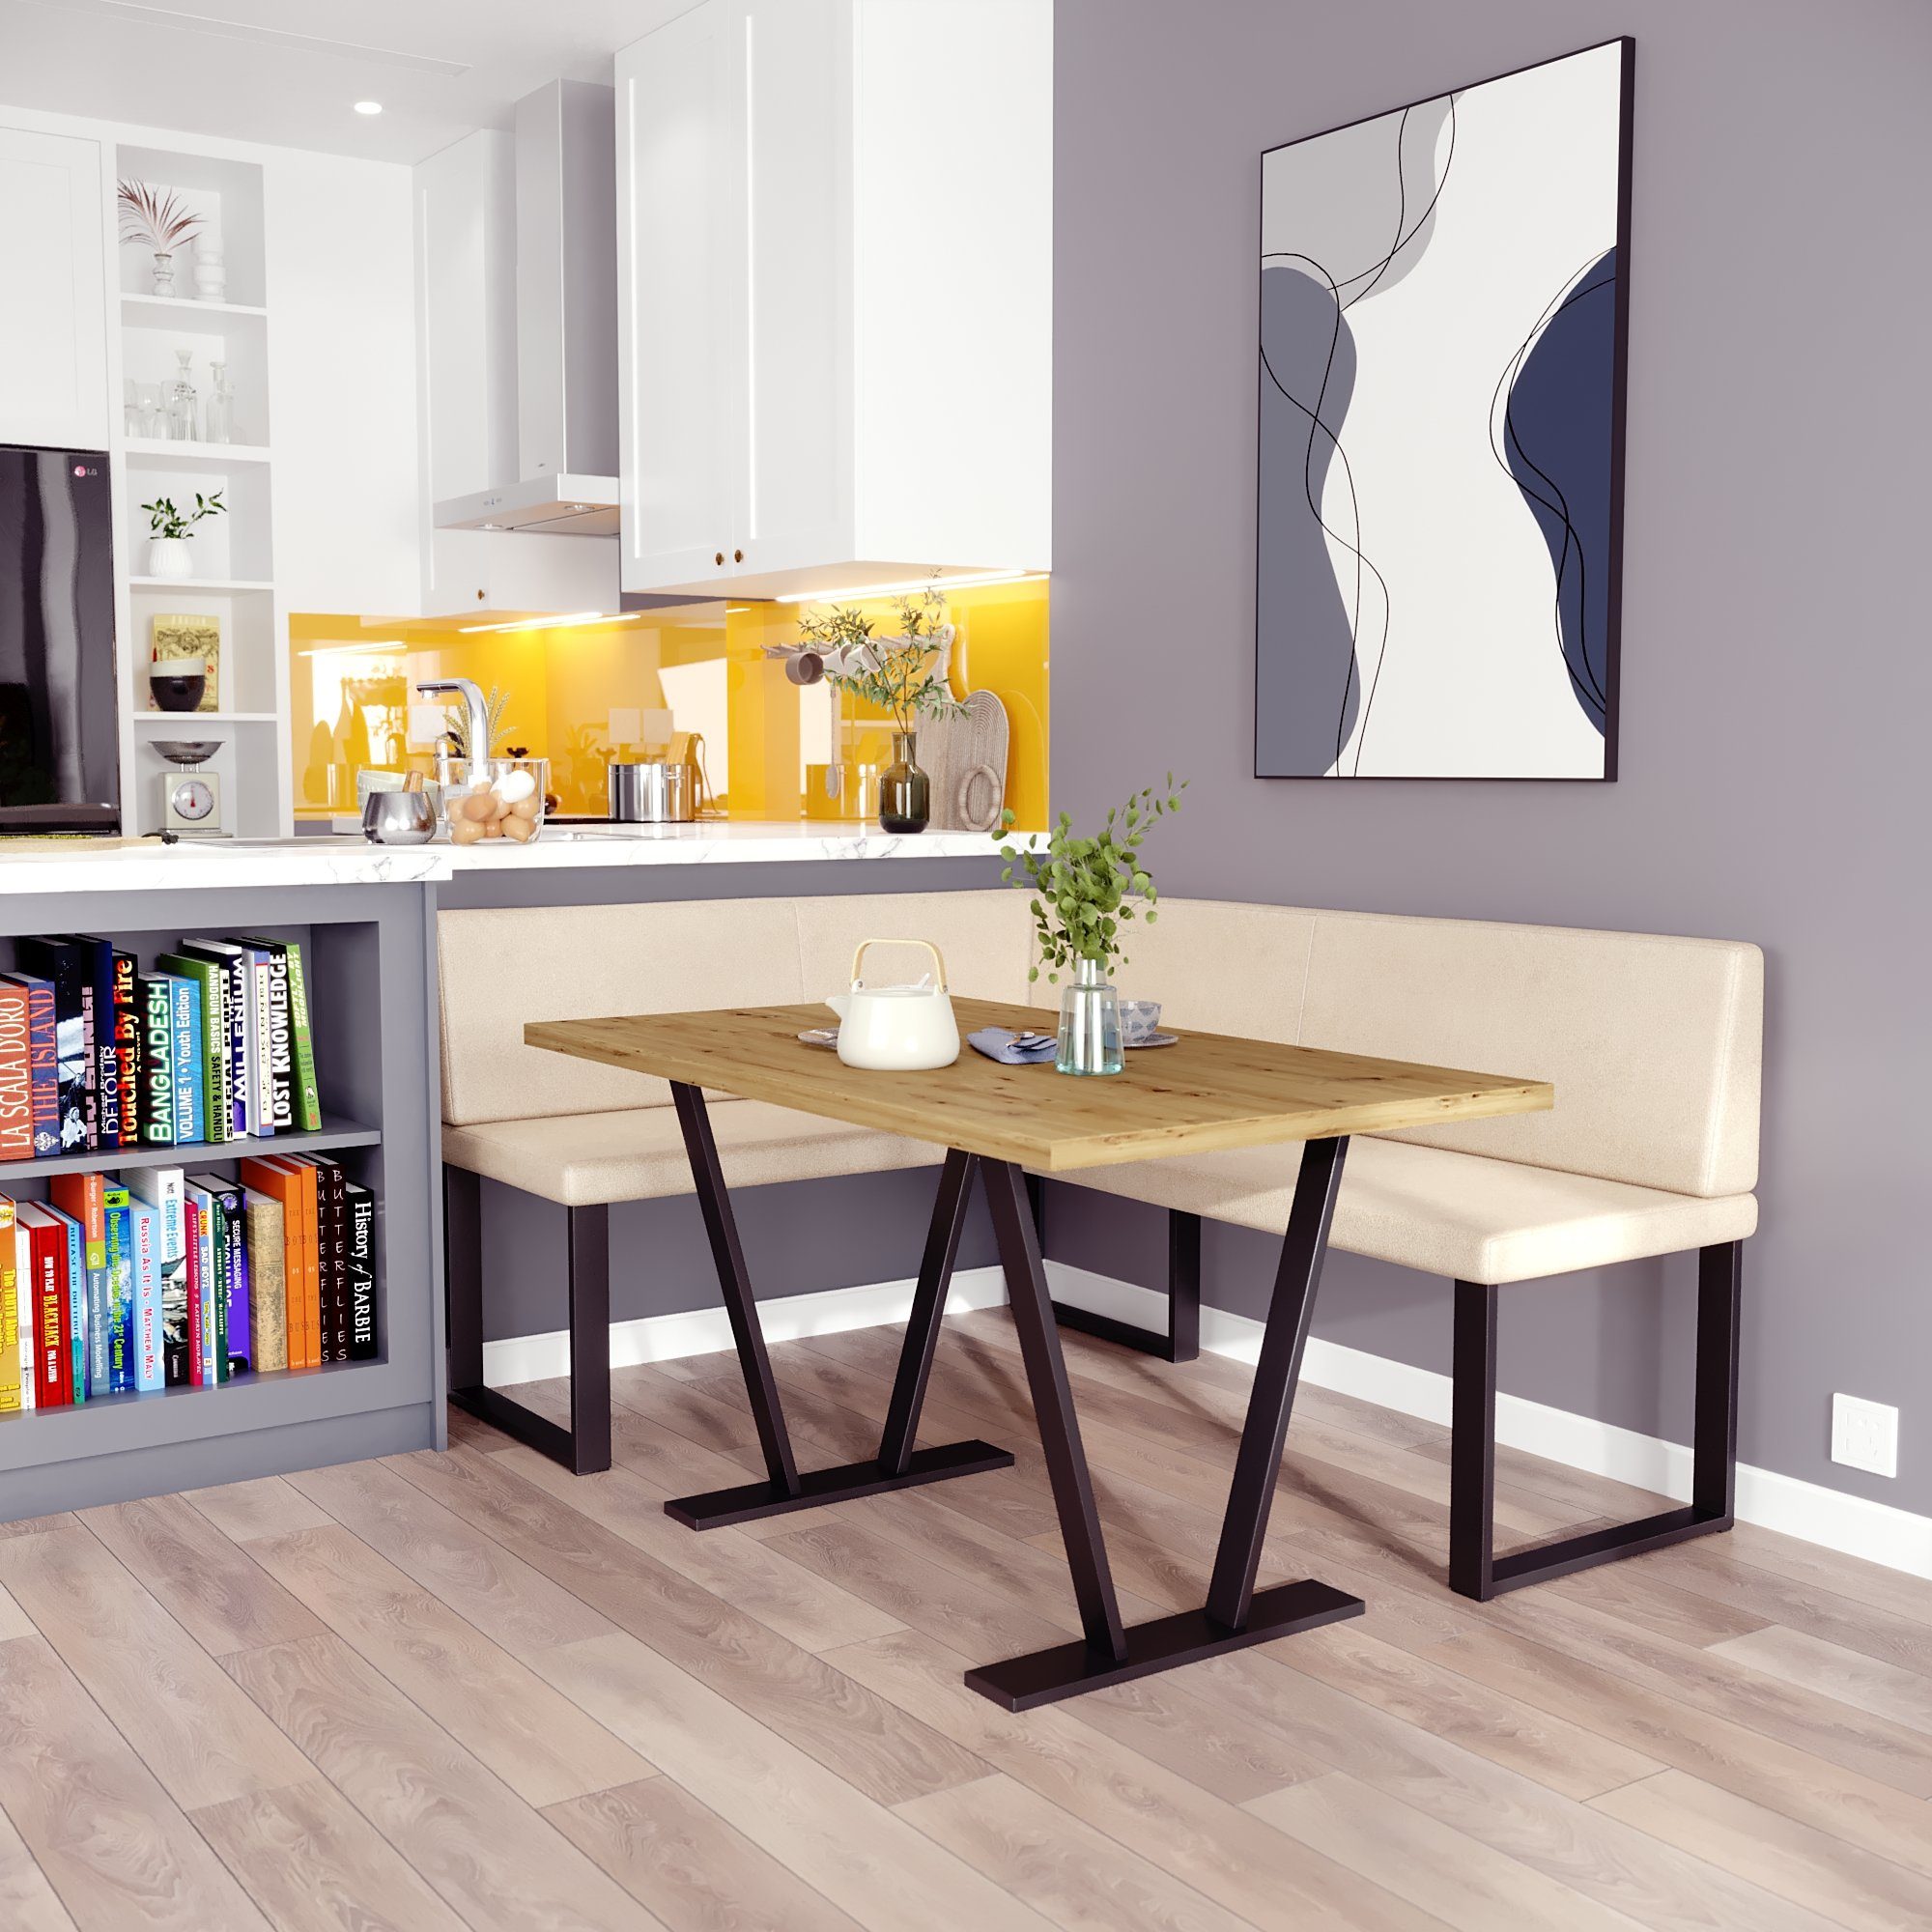 sofa4you Eckbankgruppe Alina Metall beige Tisch, Küche Esszimmer, Moderne mit perfekt Sitzecke Ihr (128x168/142x196) für